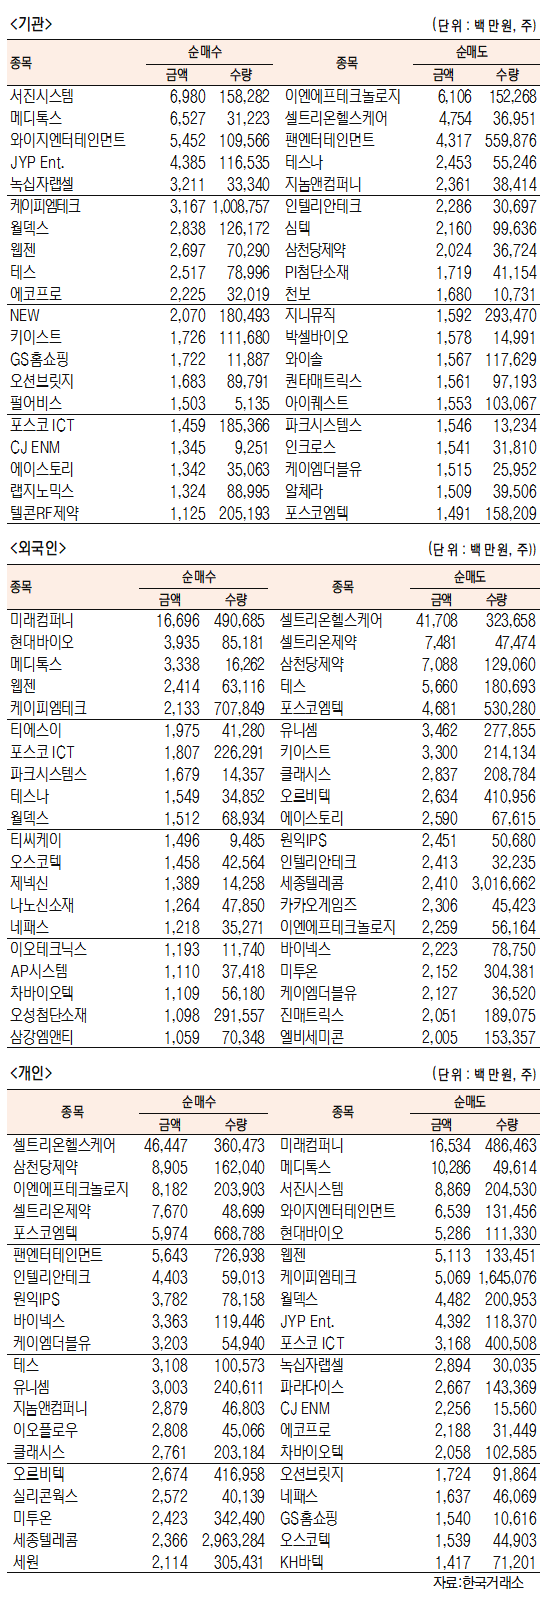 [표]코스닥 기관·외국인·개인 순매수·도 상위종목(3월 5일-최종치)